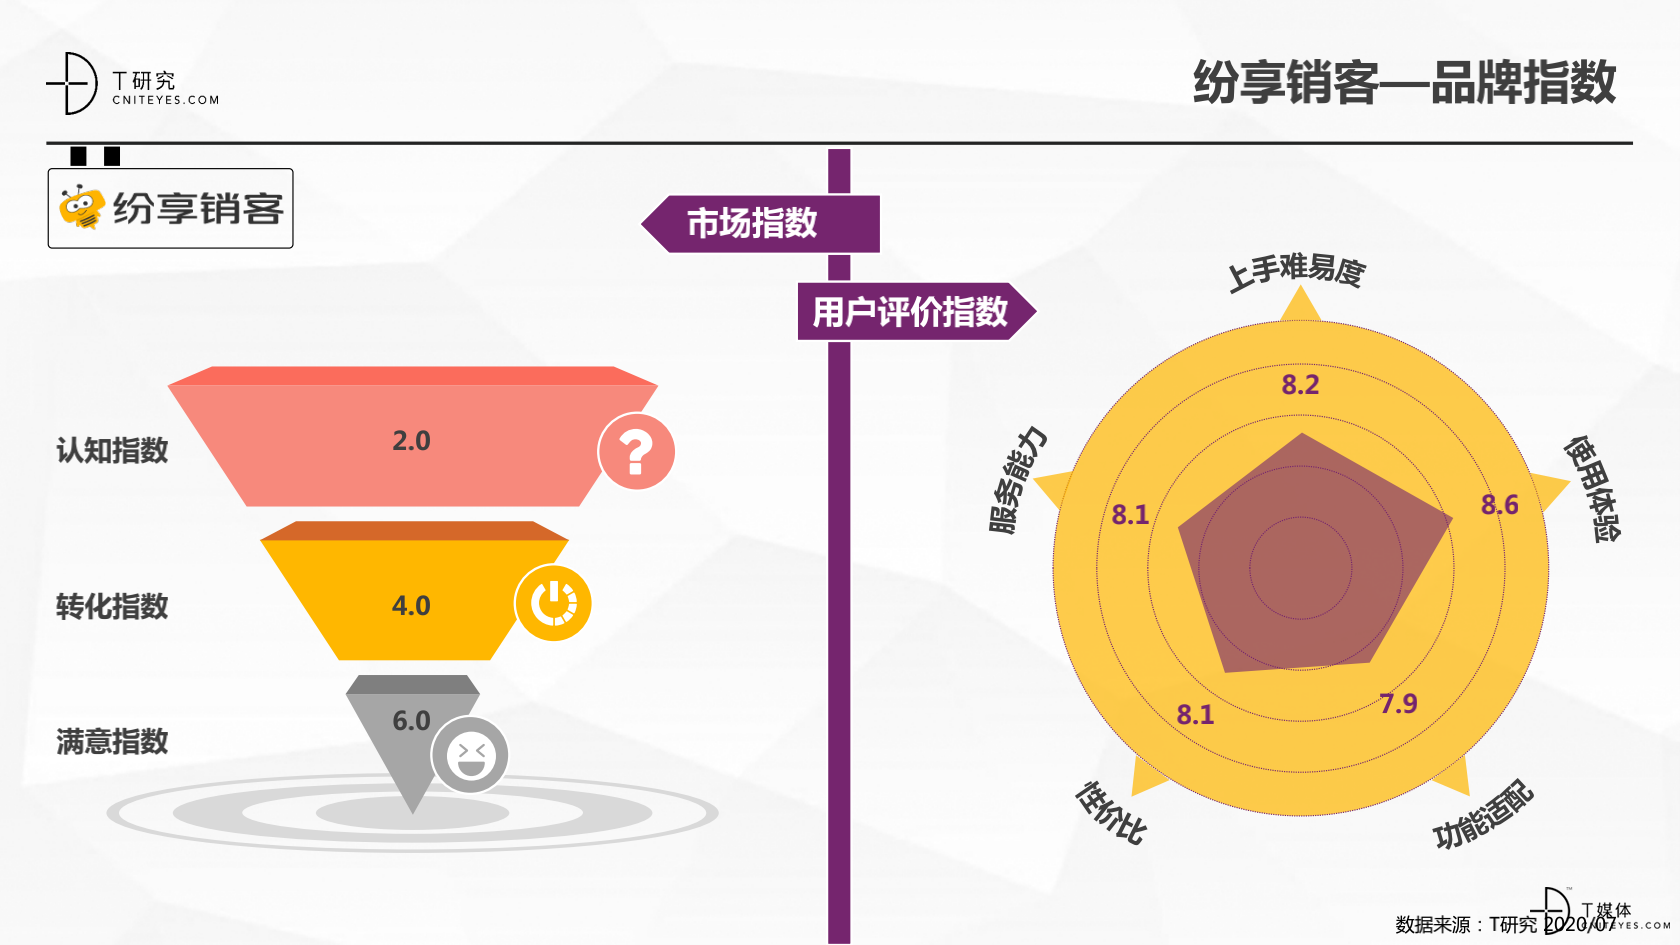 2_2020中国CRM指数测评报告v1.5_20.png